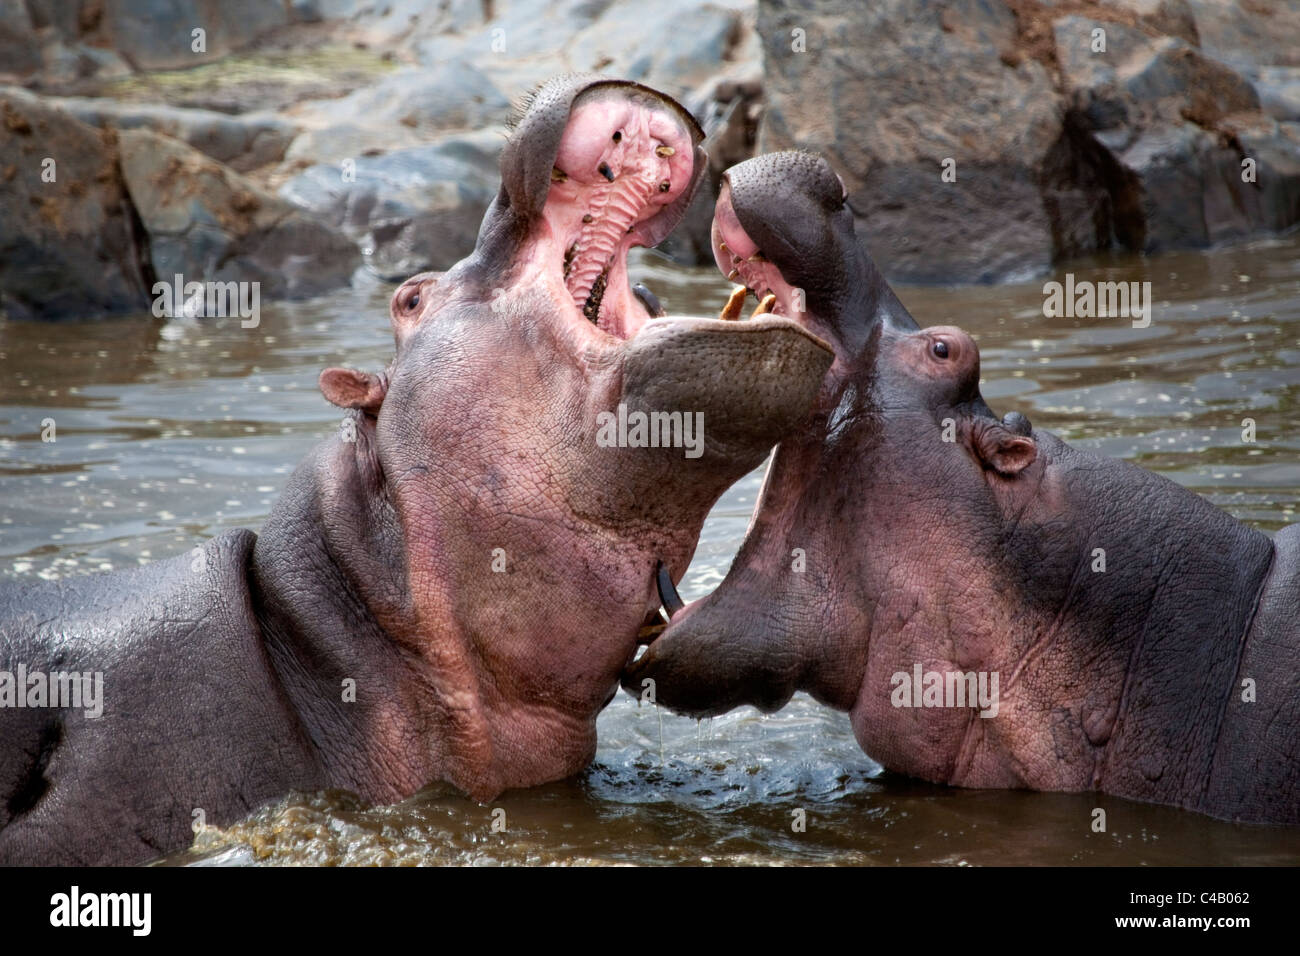 La Tanzanie, Serengeti. Hippopotames joute pour dominance dans les eaux du nord du Serengeti Hippo Pool. Banque D'Images